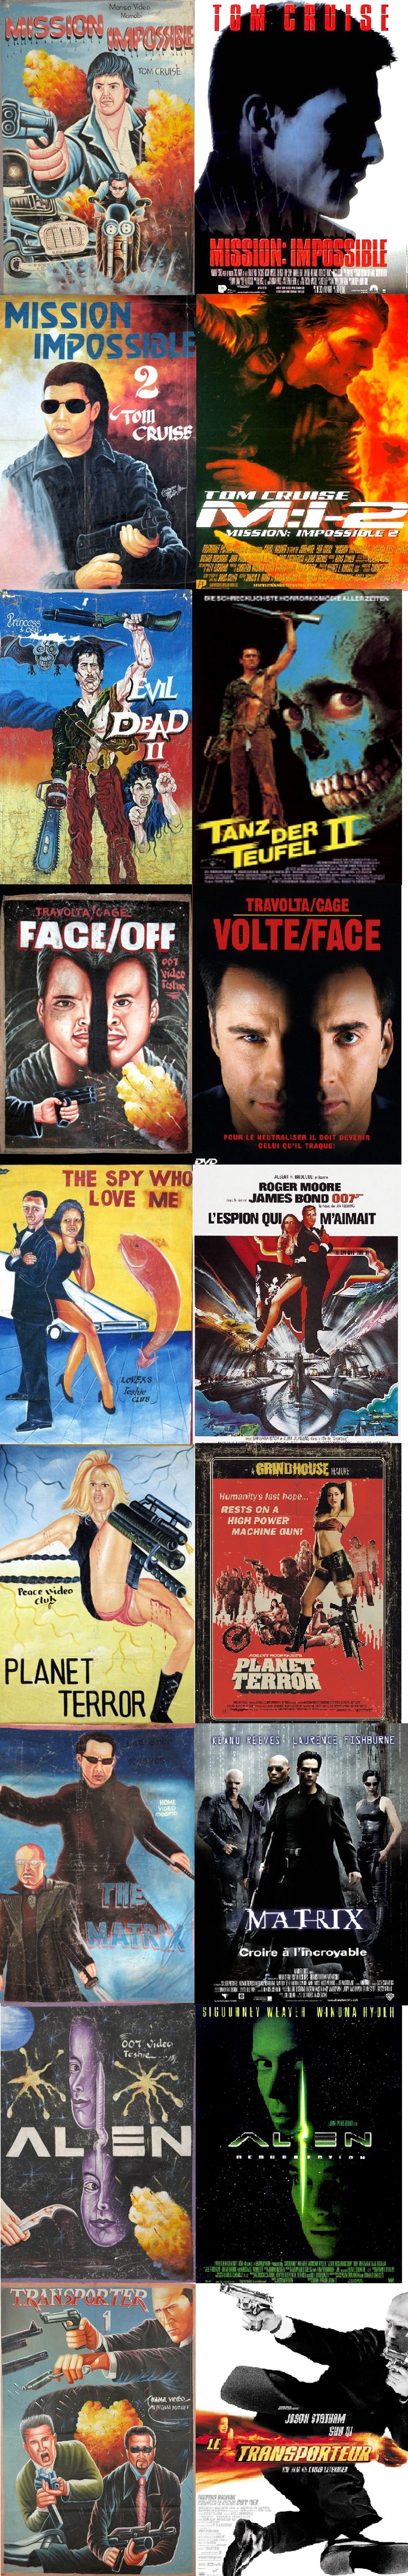 La ghanaisation des affiches de cinéma.

Robert Rodriguez n'aurait sûrement pas renié Planet terror pour le reste...Beaucoup de questions (mais d'où vient ce poisson pour le James Bond?)